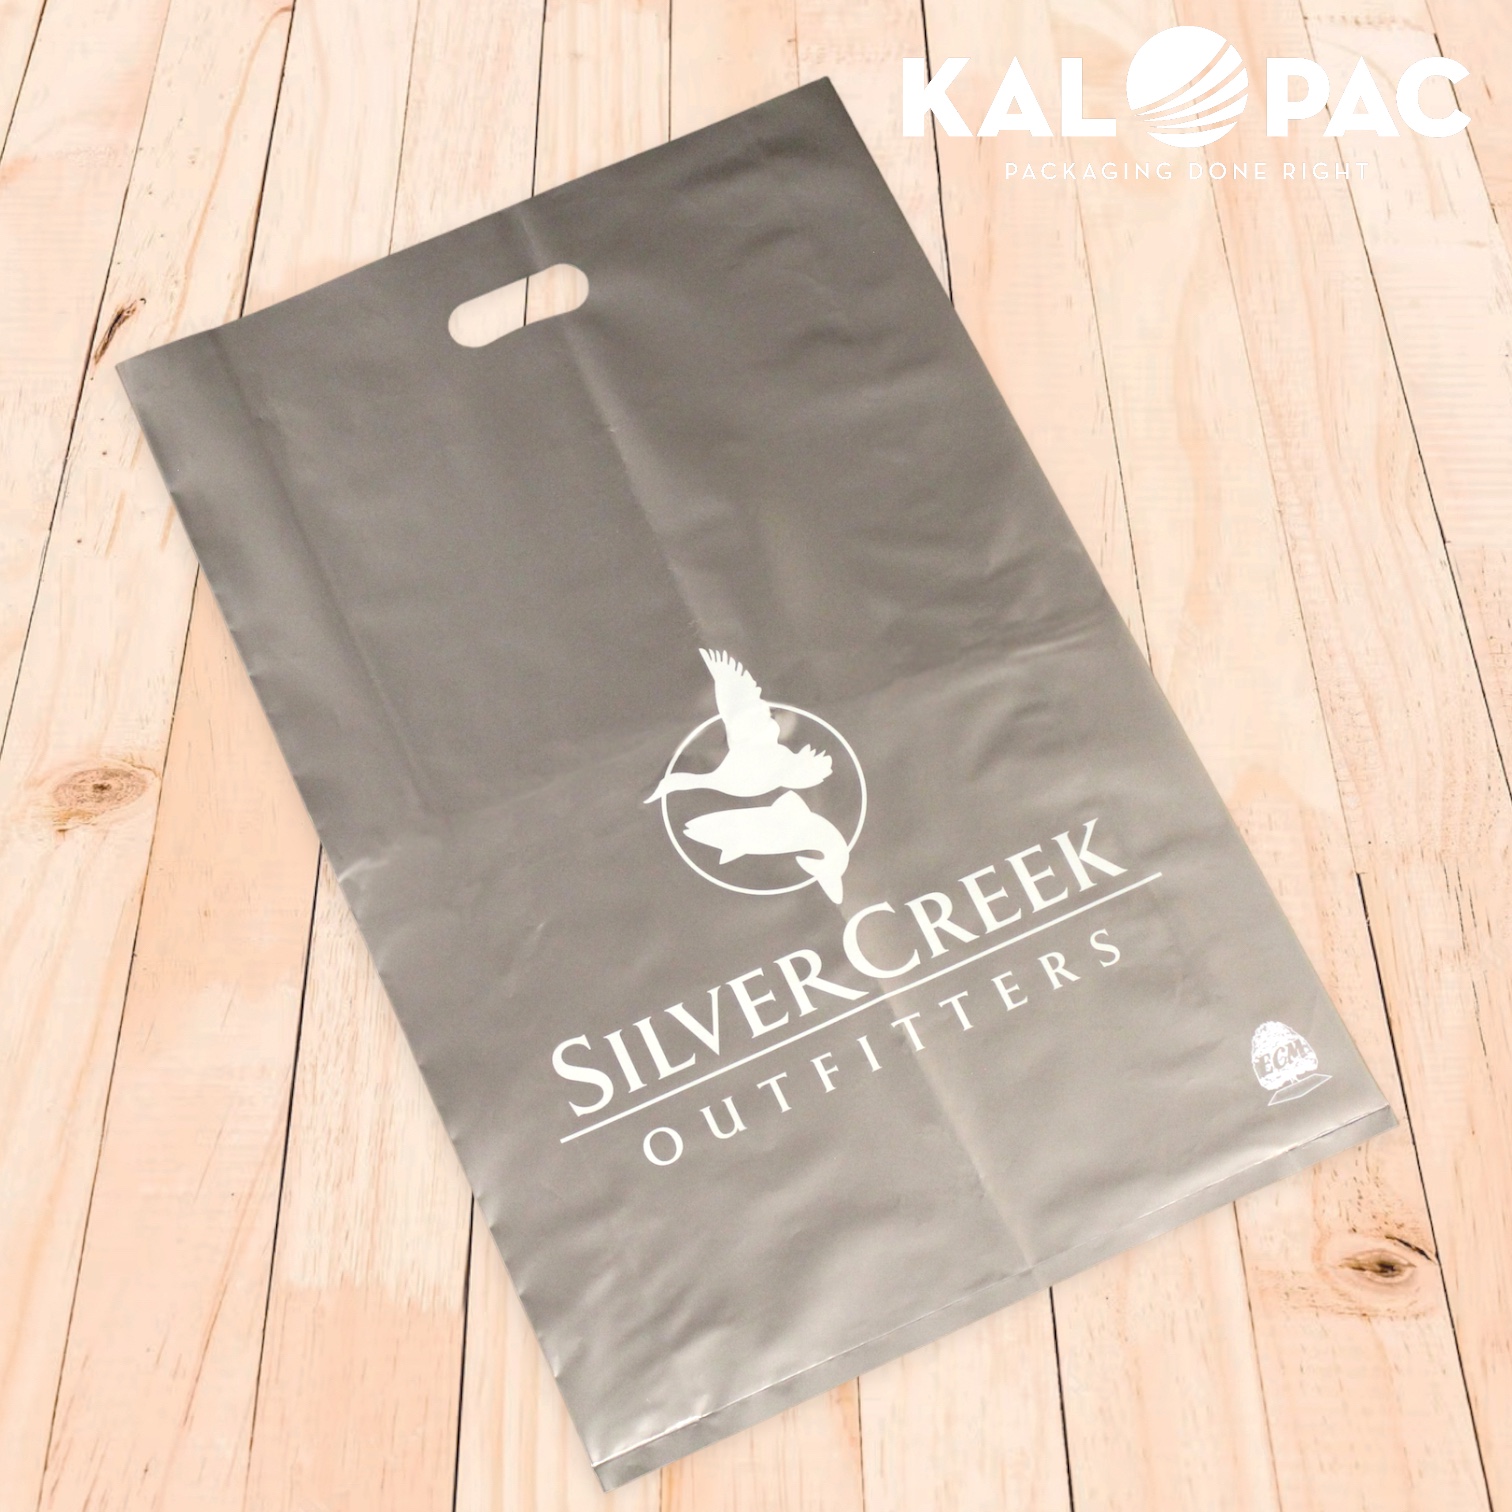 Silver Creek Outfitters Die Cut Bag